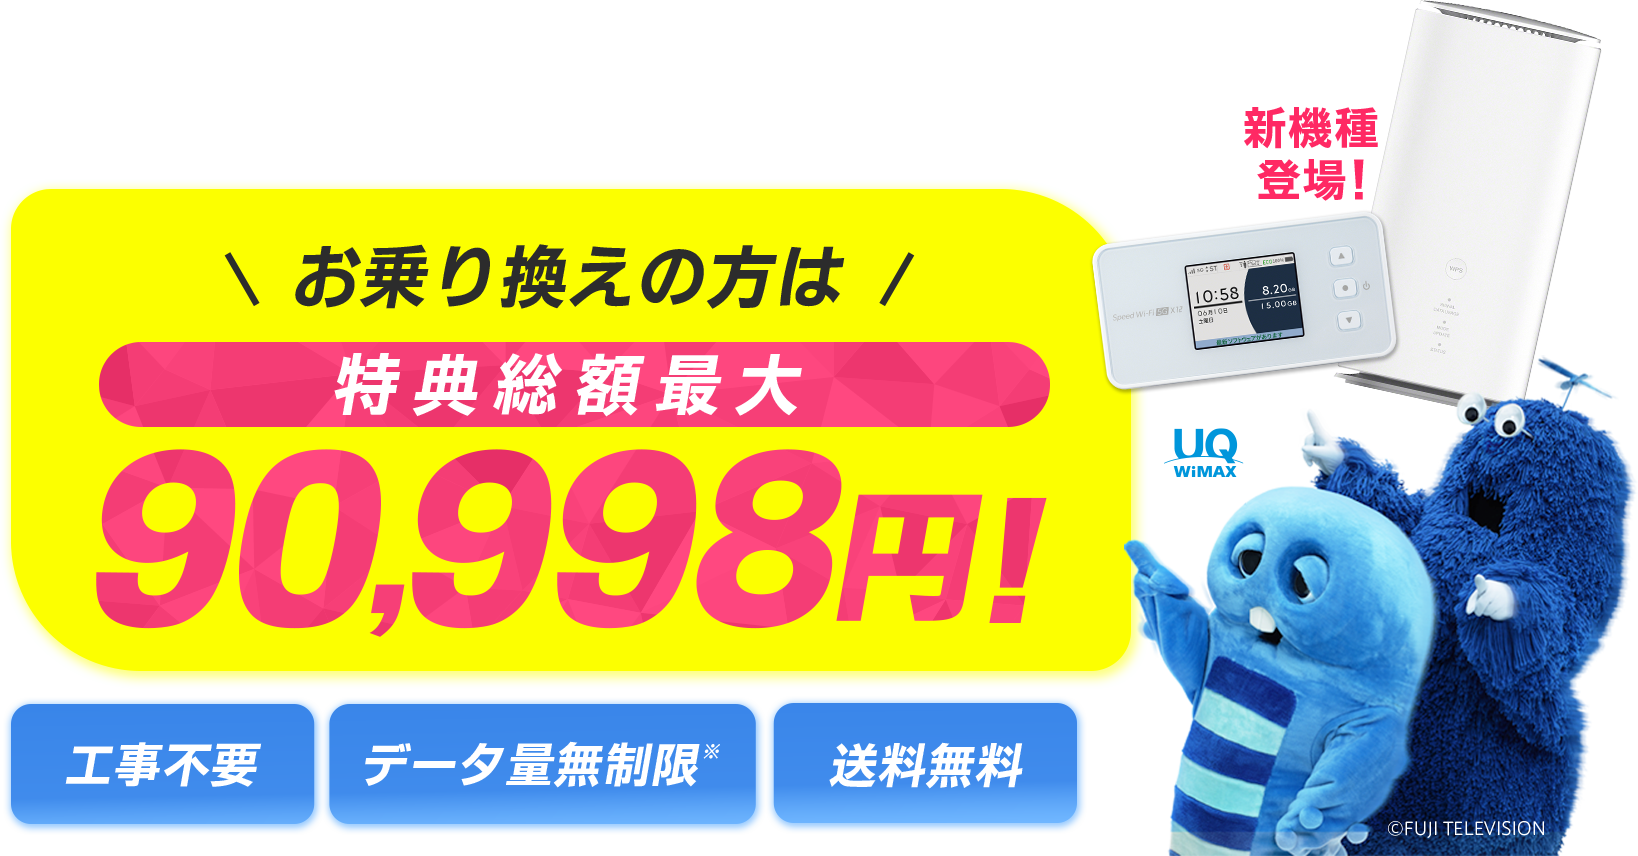 届いたらすぐに高速インターネット5G対応WiMAX お乗り換えの方は特典総額最大90,998円！　工事不要　データ量無制限※　送料無料